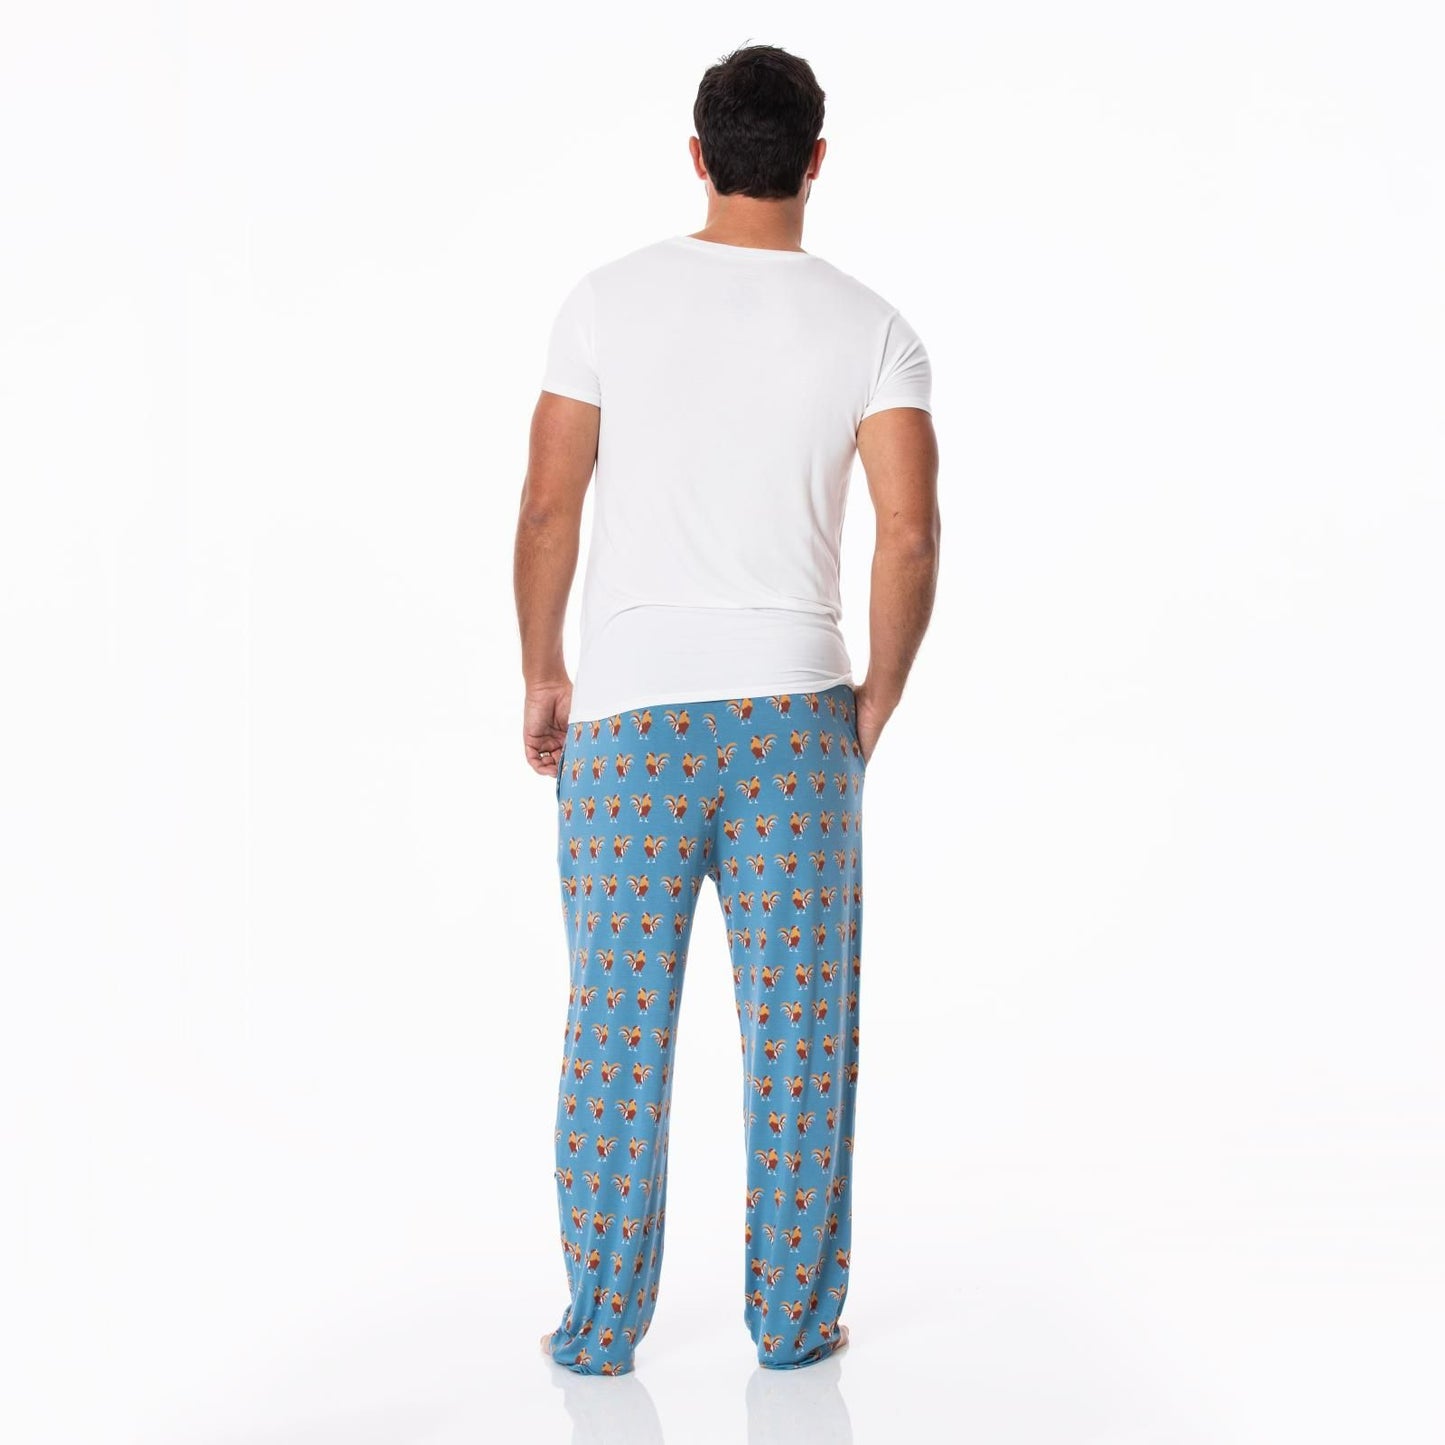 Men's Pajama Pants - Parisian Rooster